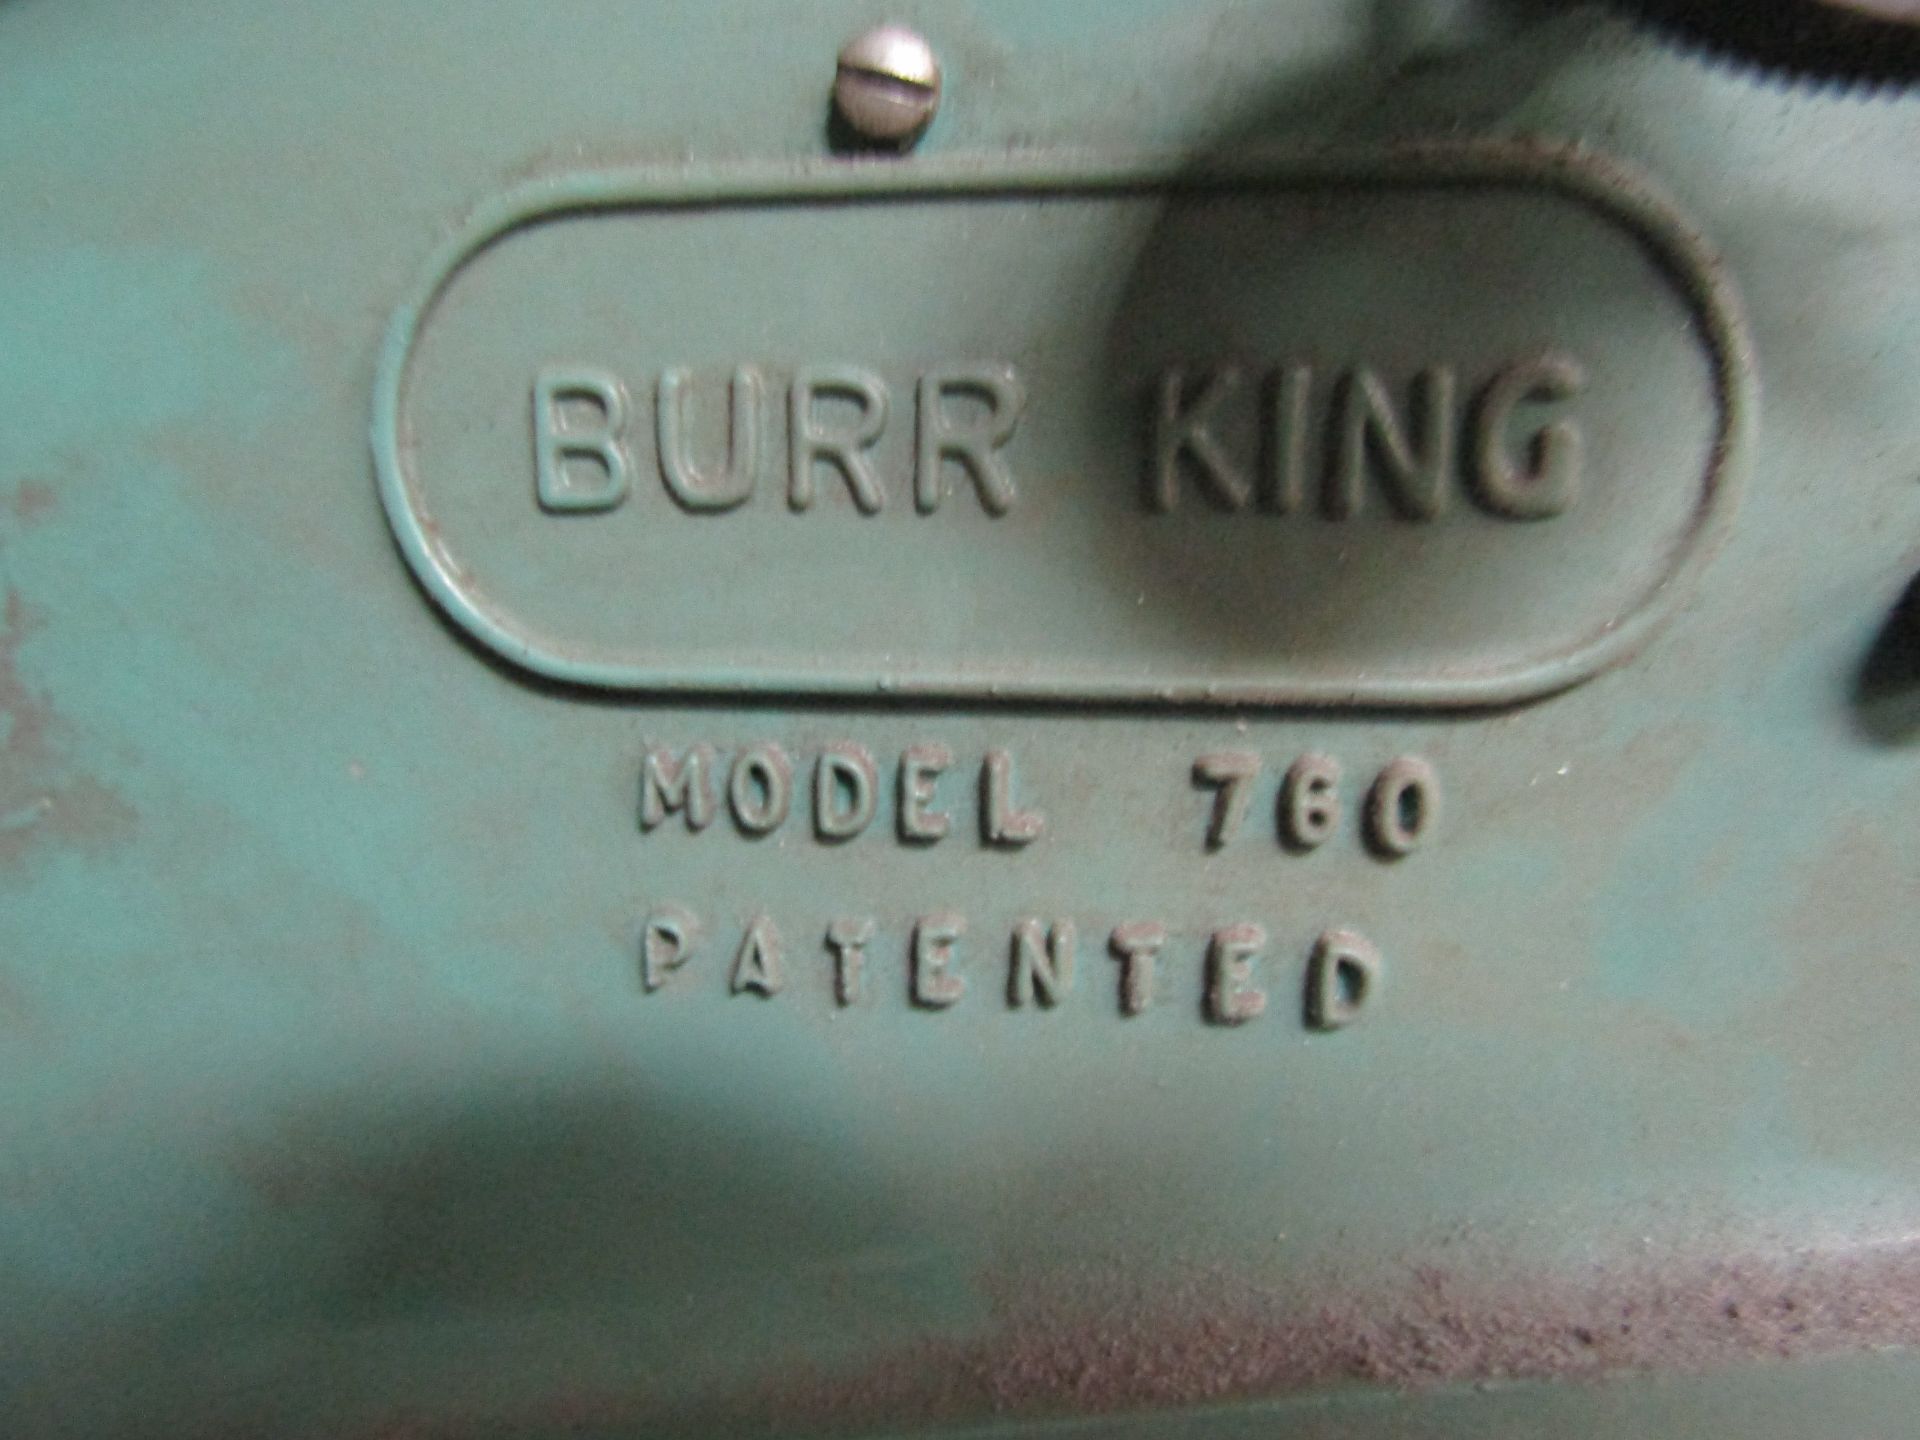 BURR KING 760 BELT GRINDER - Image 2 of 4